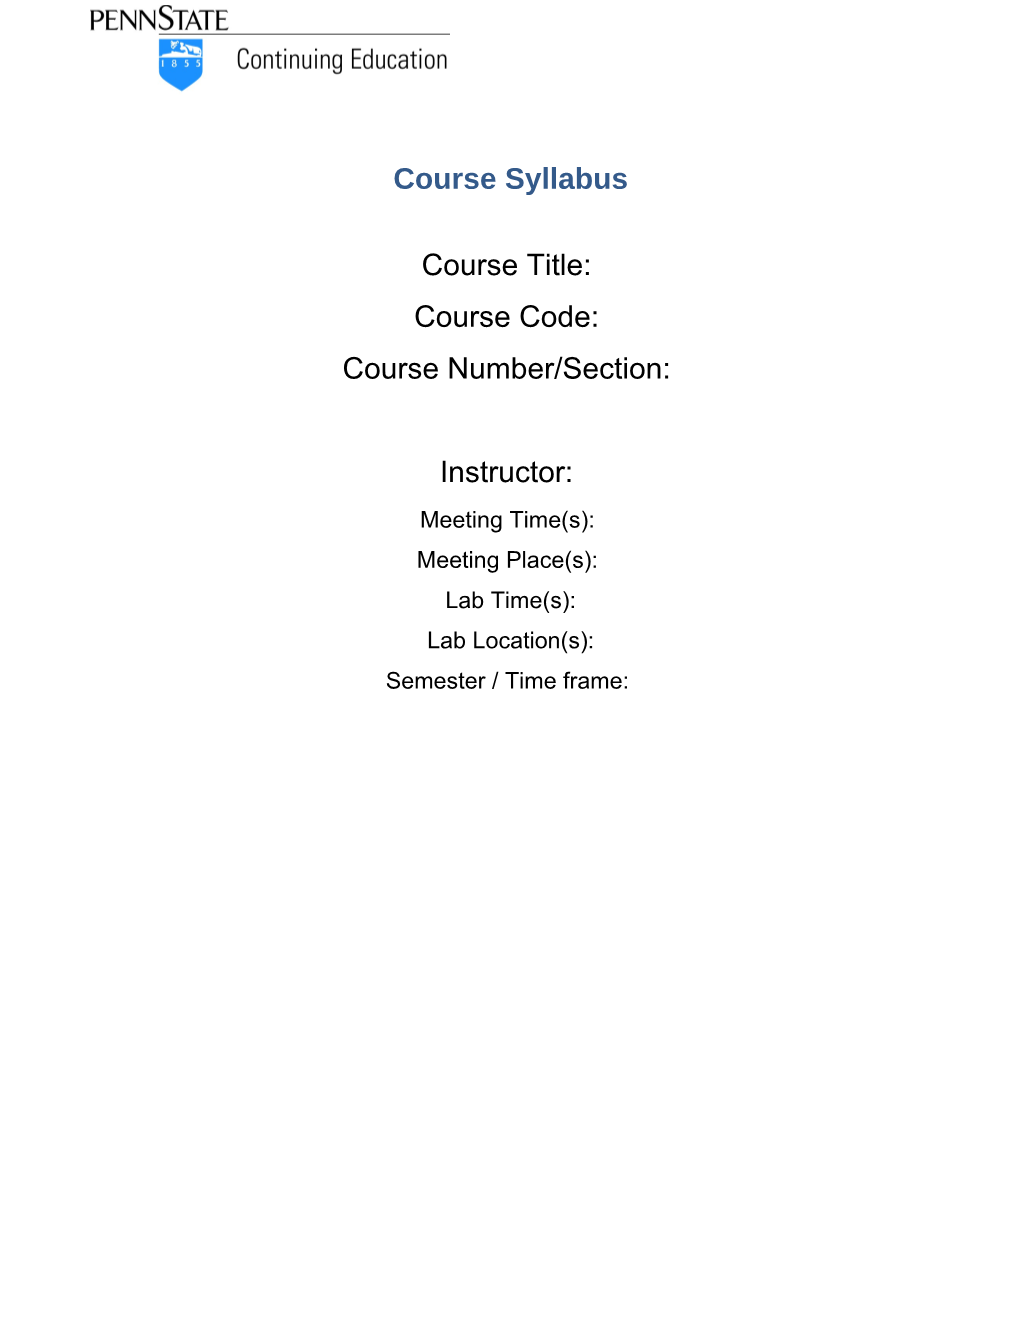 Course Syllabus KM1